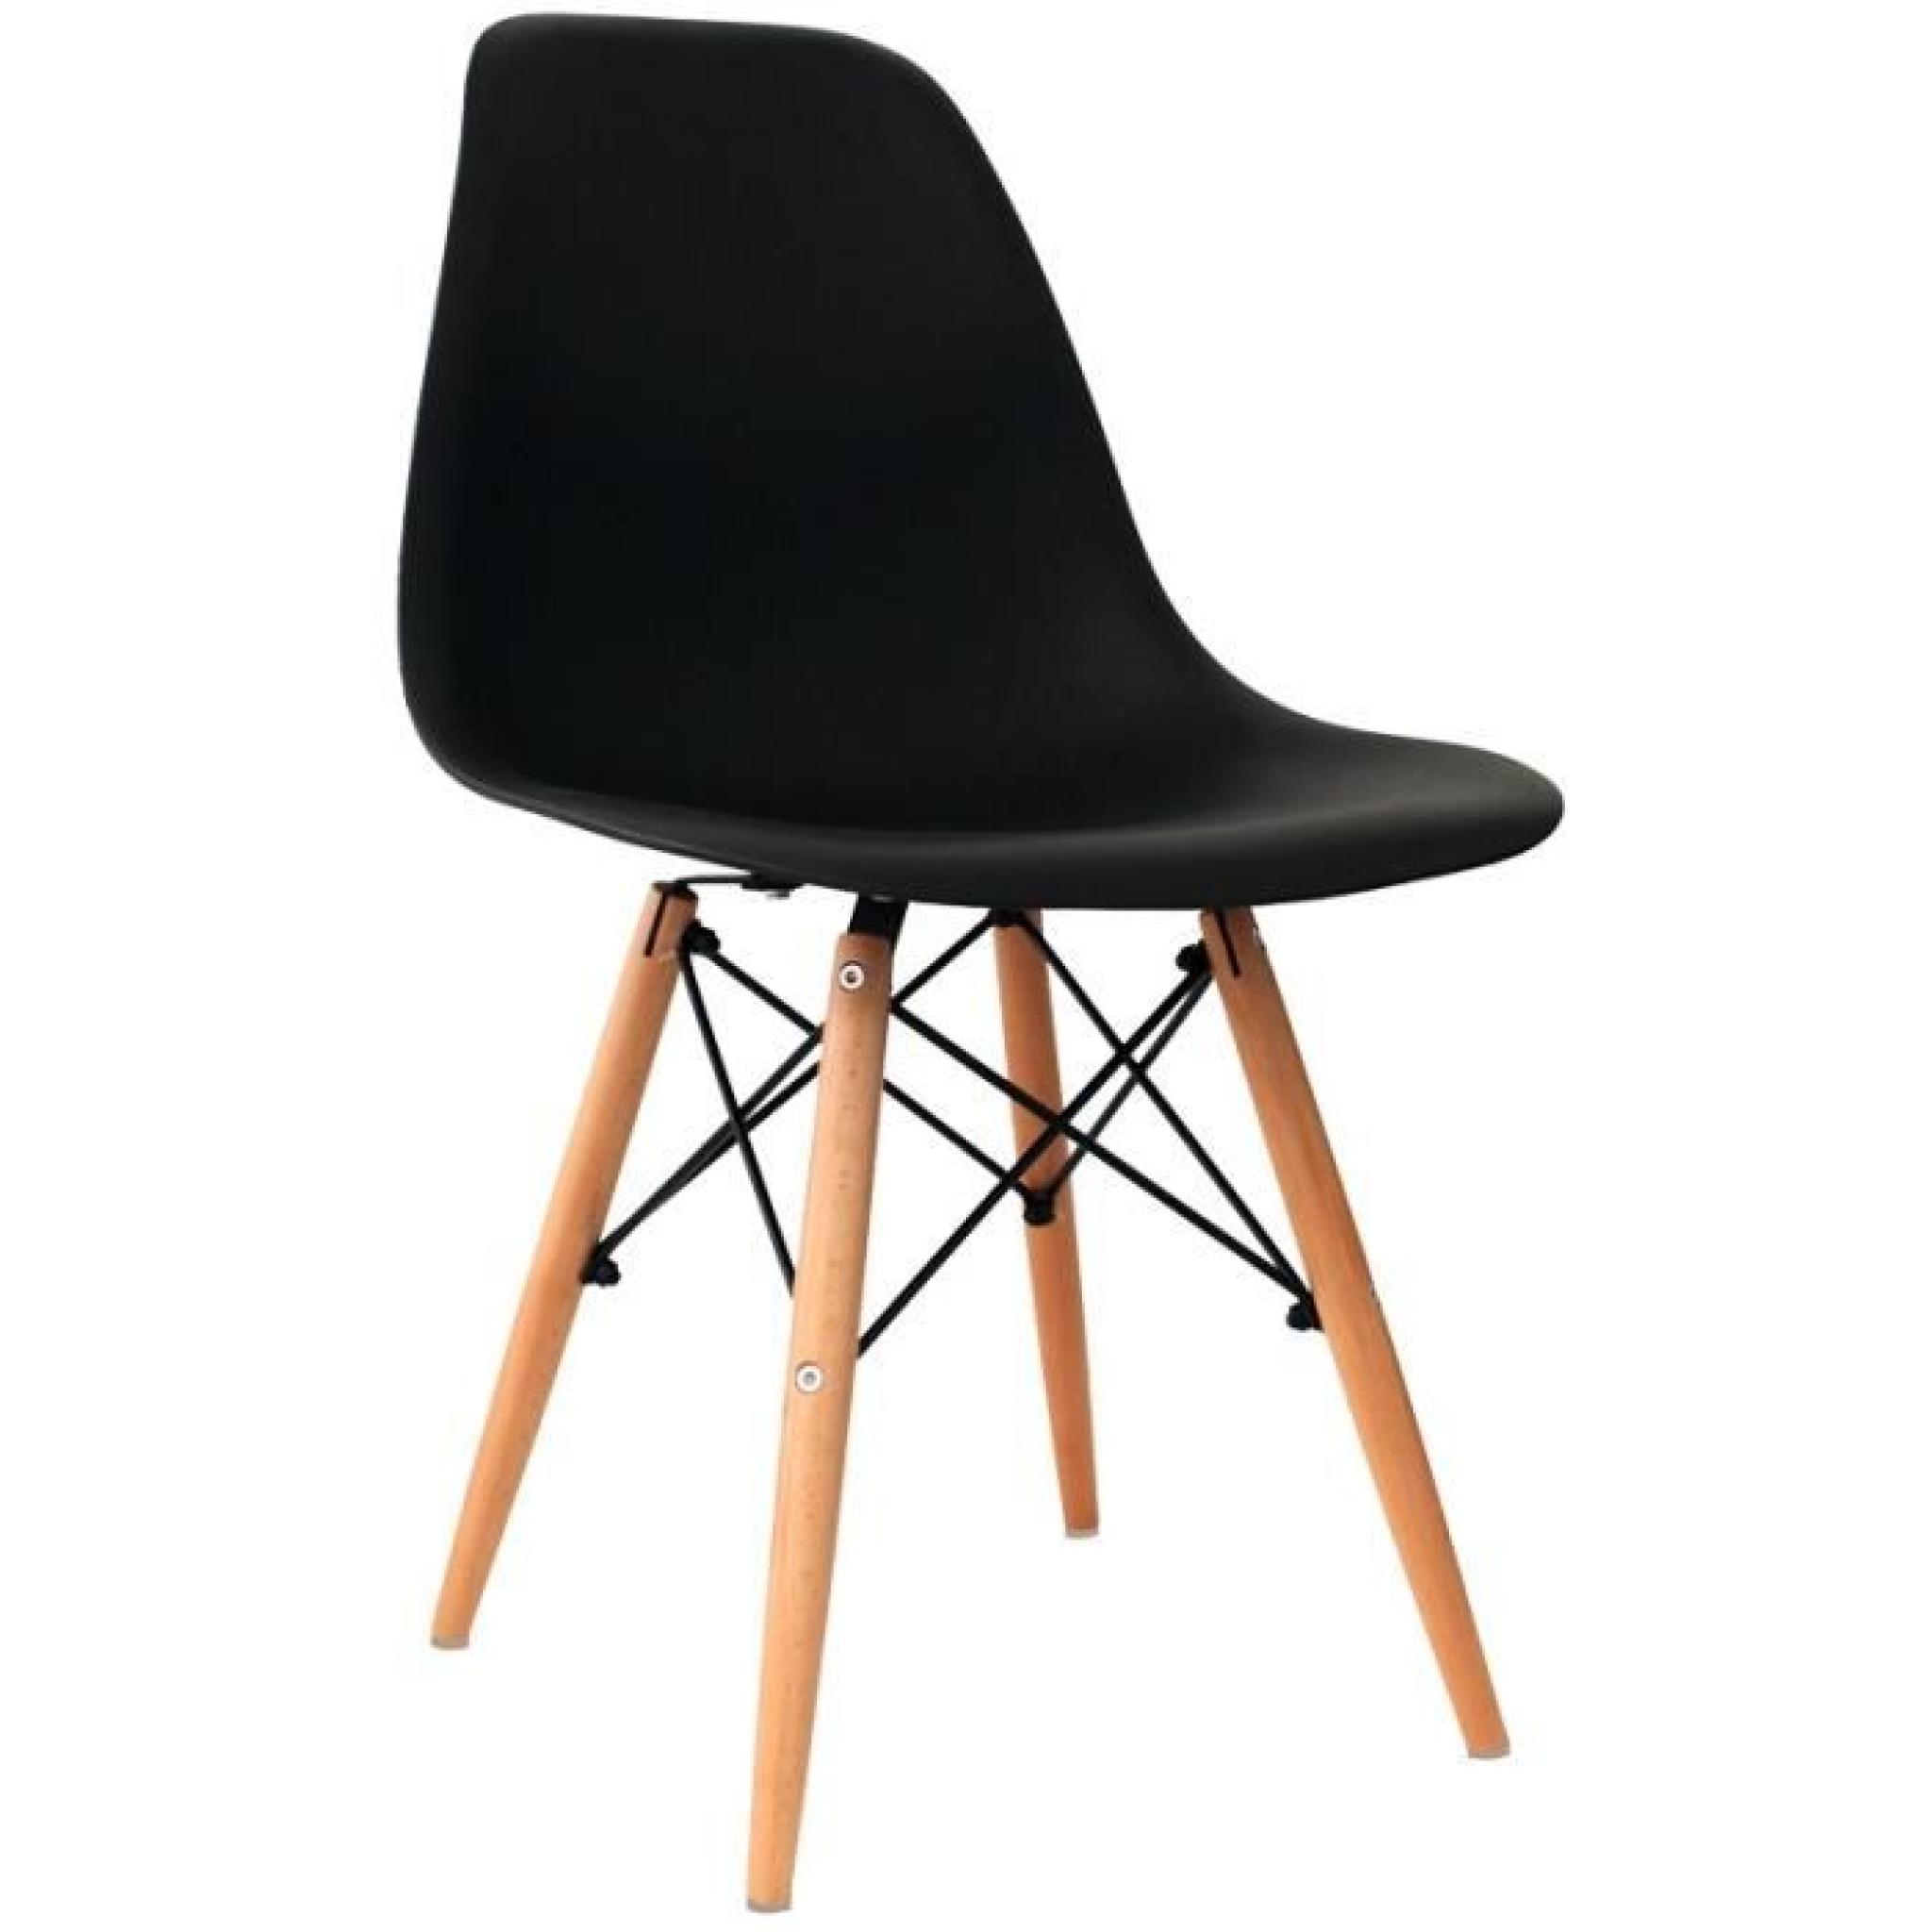 Chaise design noir pieds en bois RETRO lot de 6 pas cher